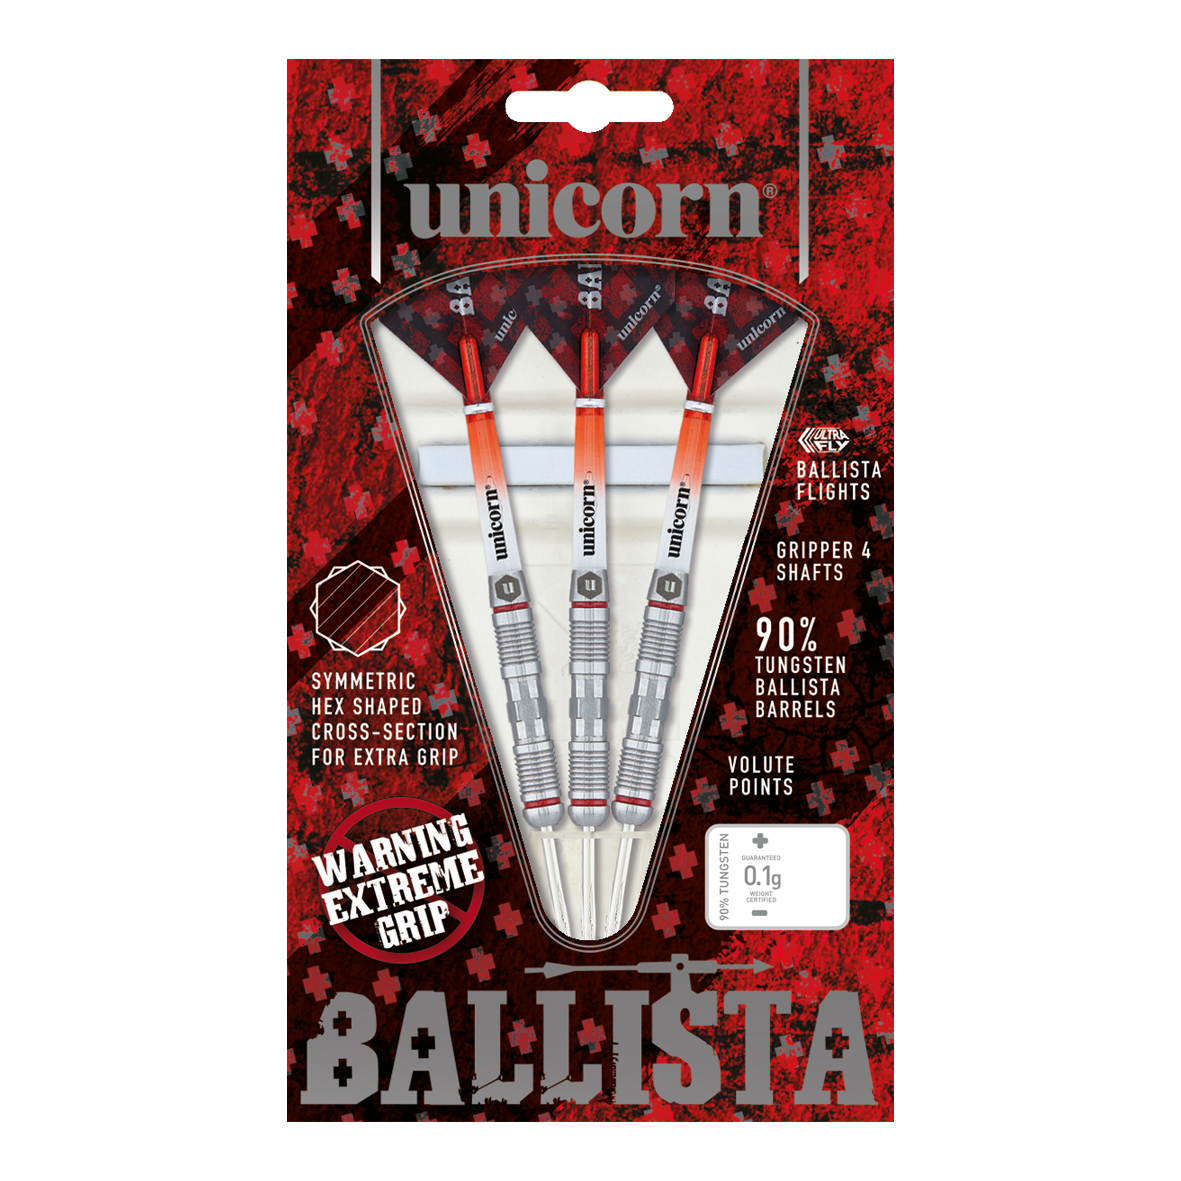 Unicorn Ballista Style 2 dardos de acero